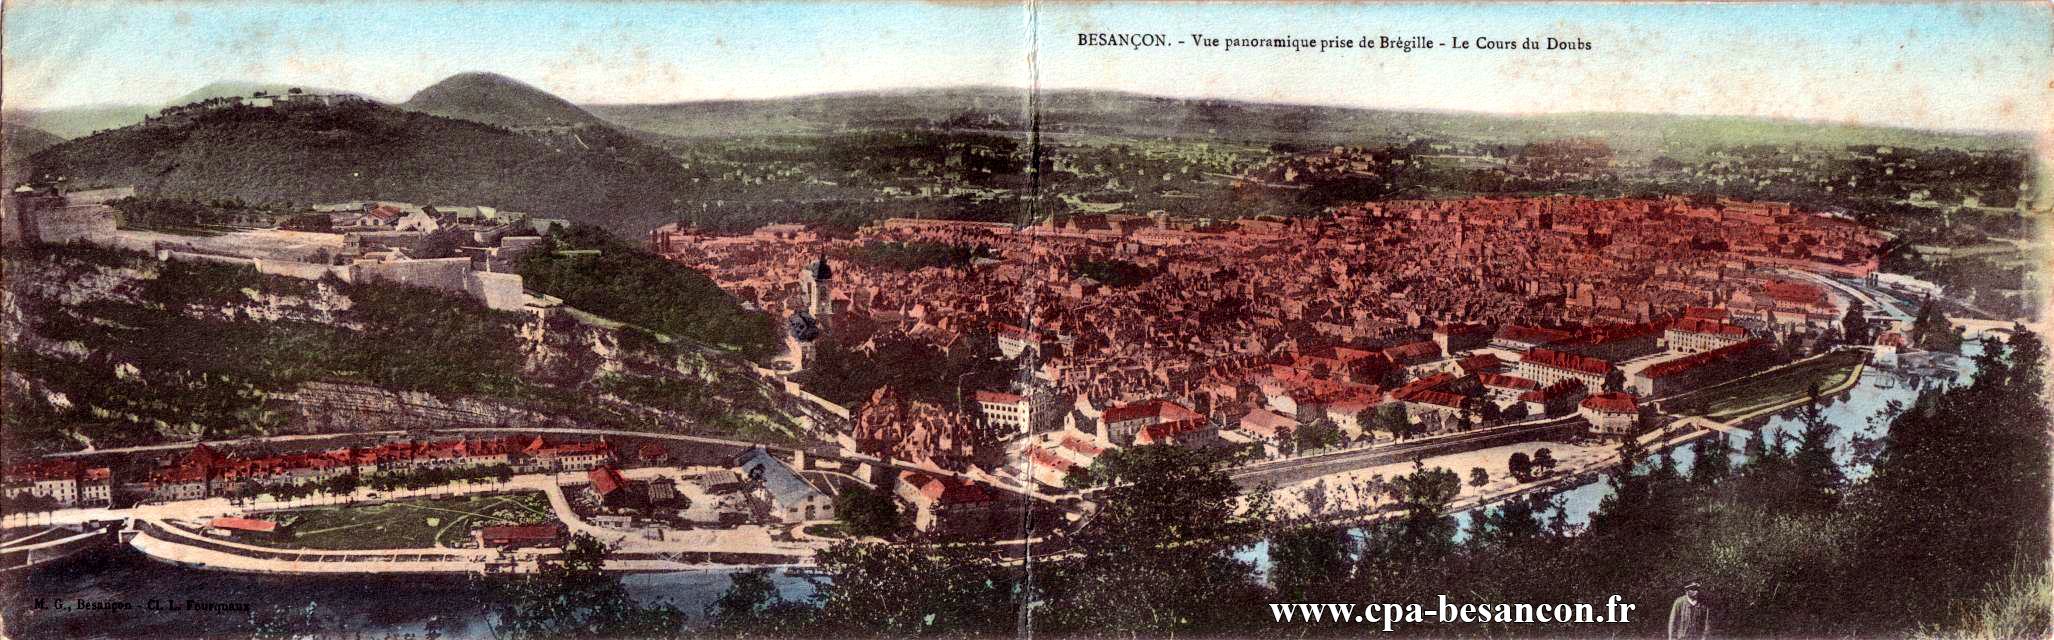 BESANÇON. - Vue panoramique de Brégille - Le Cours du Doubs